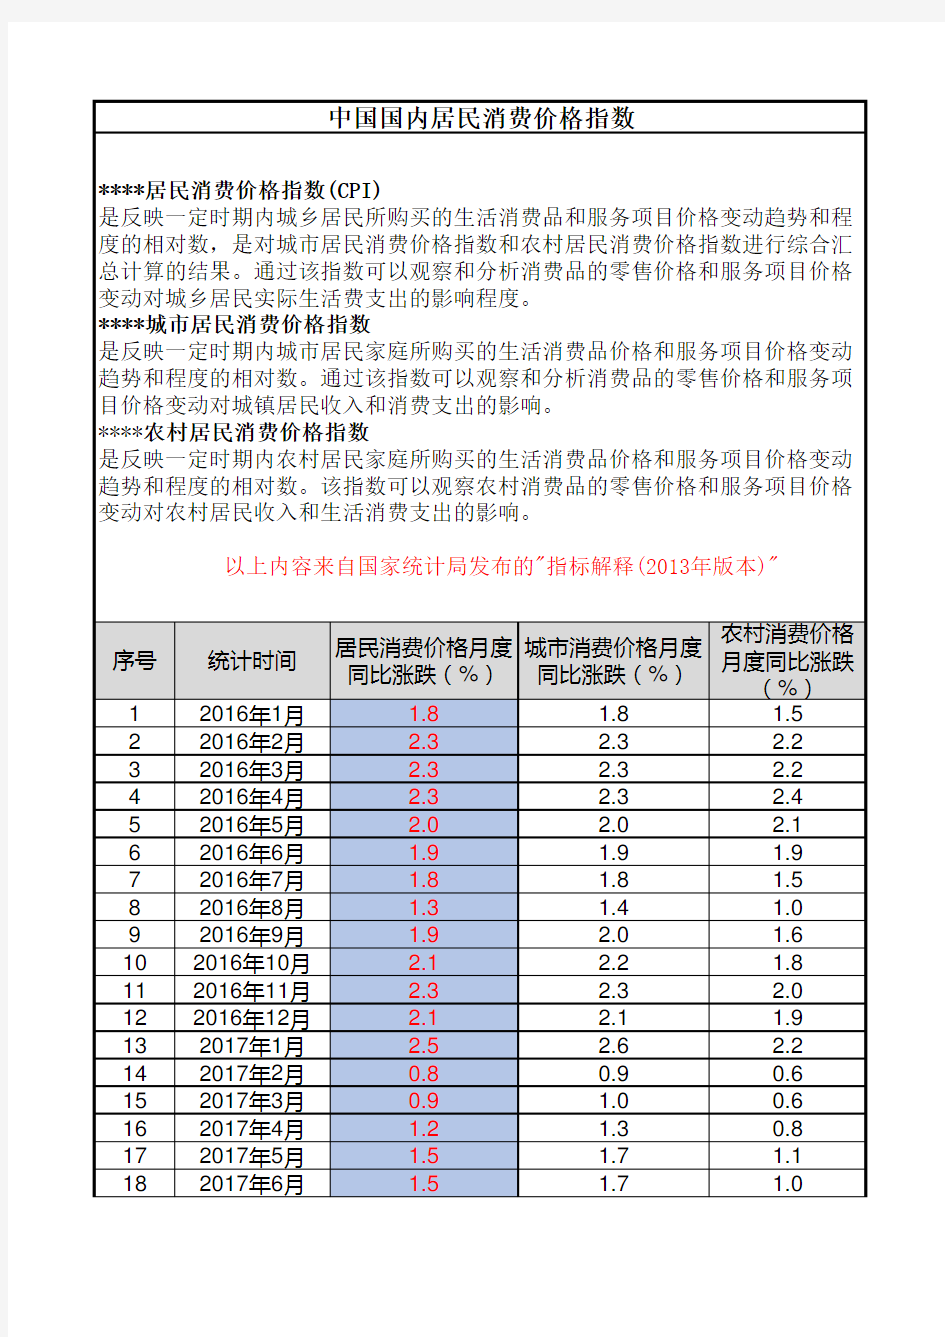 中国国内居民消费价格指数(CPI)--2016年至2020年